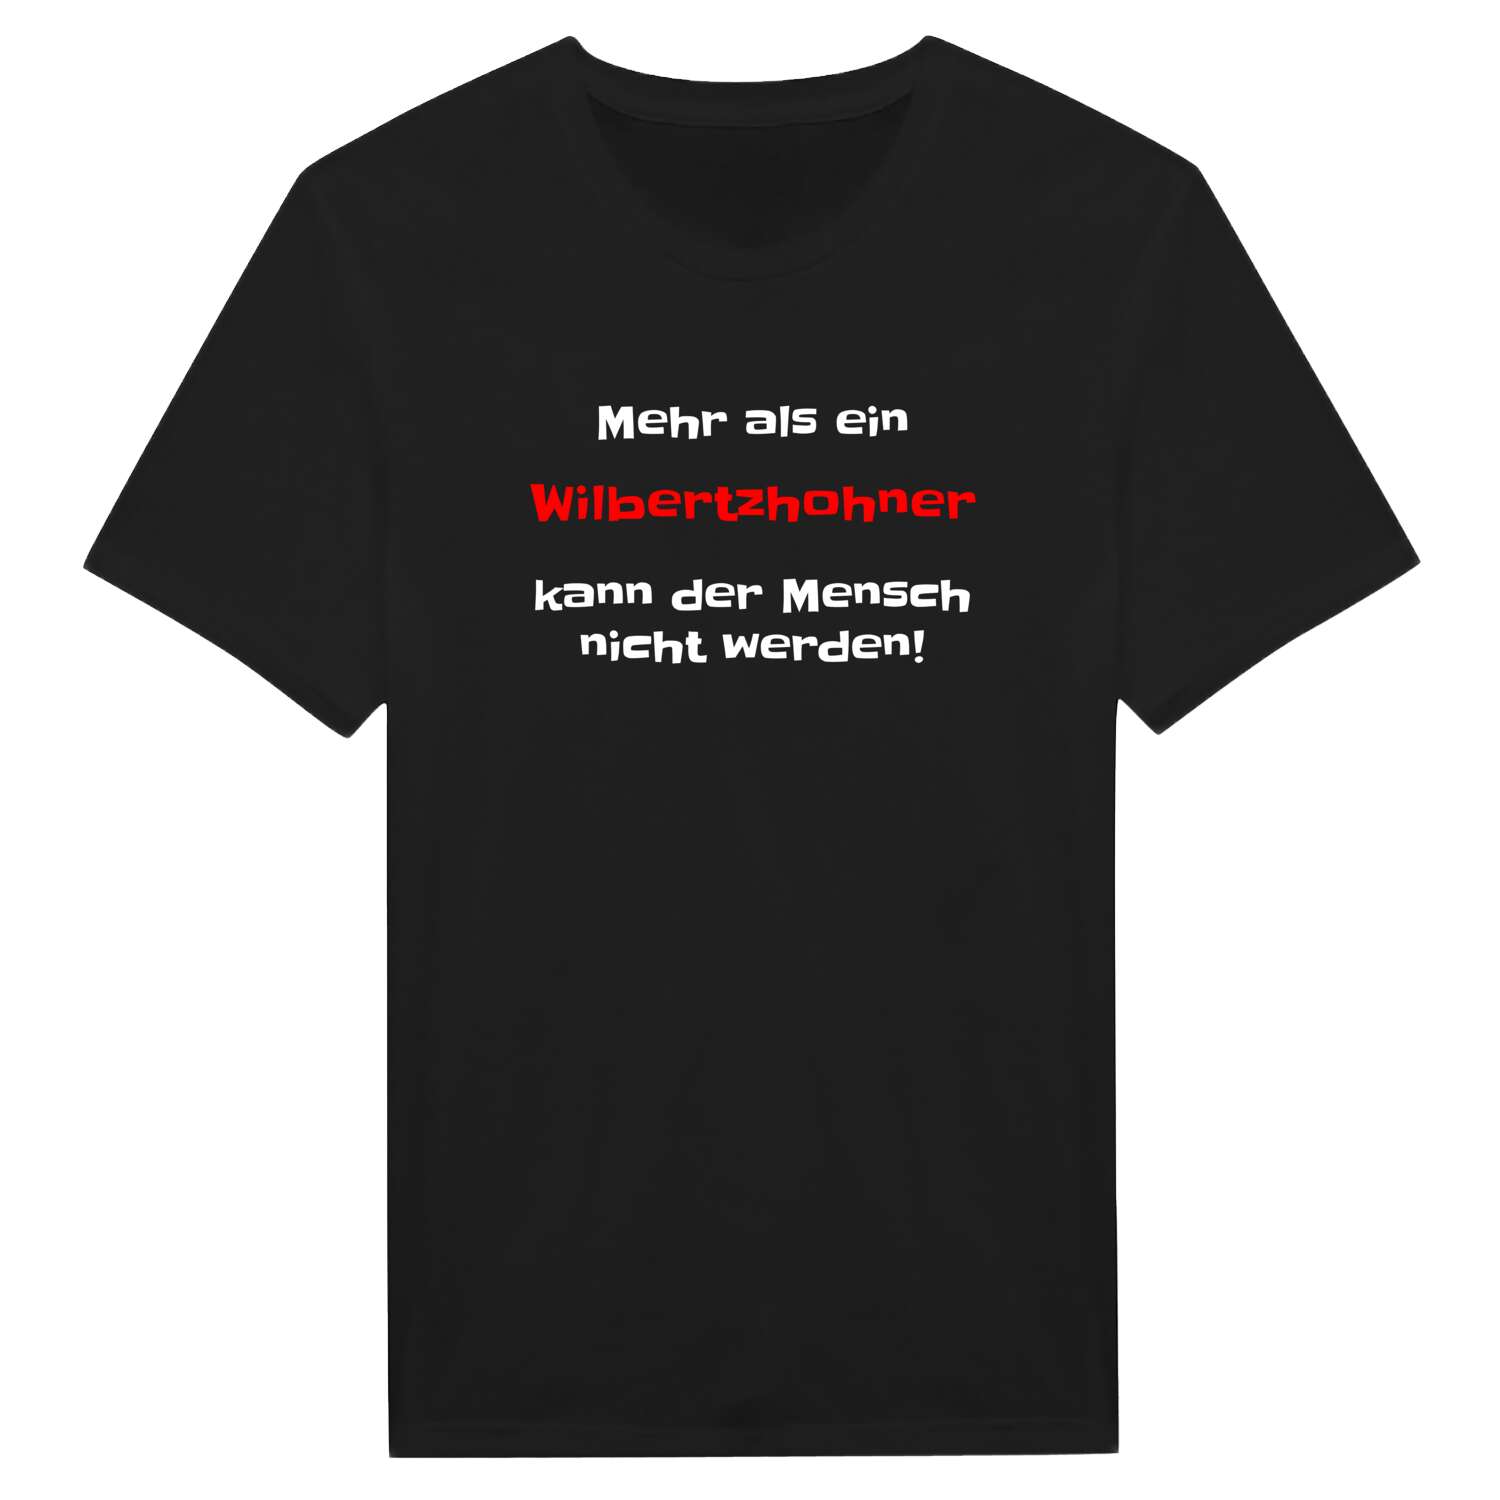 Wilbertzhohn T-Shirt »Mehr als ein«